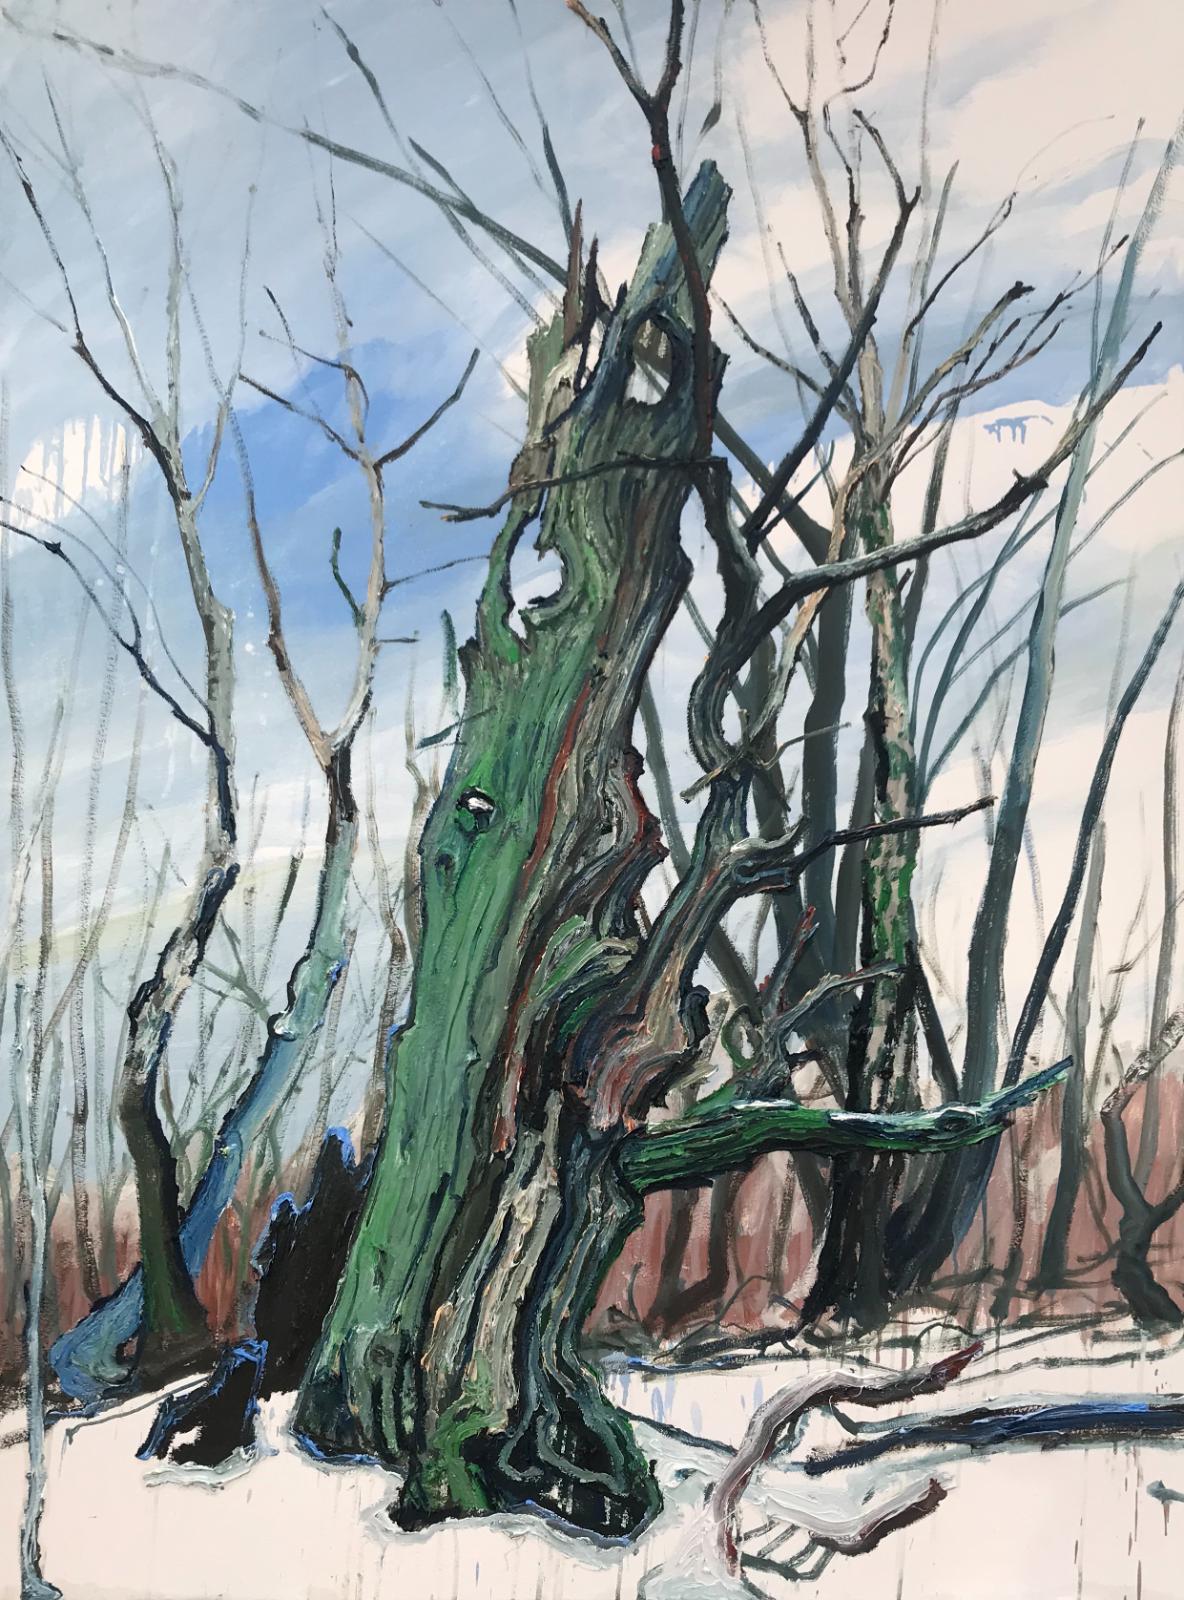 Helge Hommes, DU Baumporträt im Reinhardswald, plein air 2019, Öl auf Leinwand, 160 x 120cm, Preis auf Anfrage